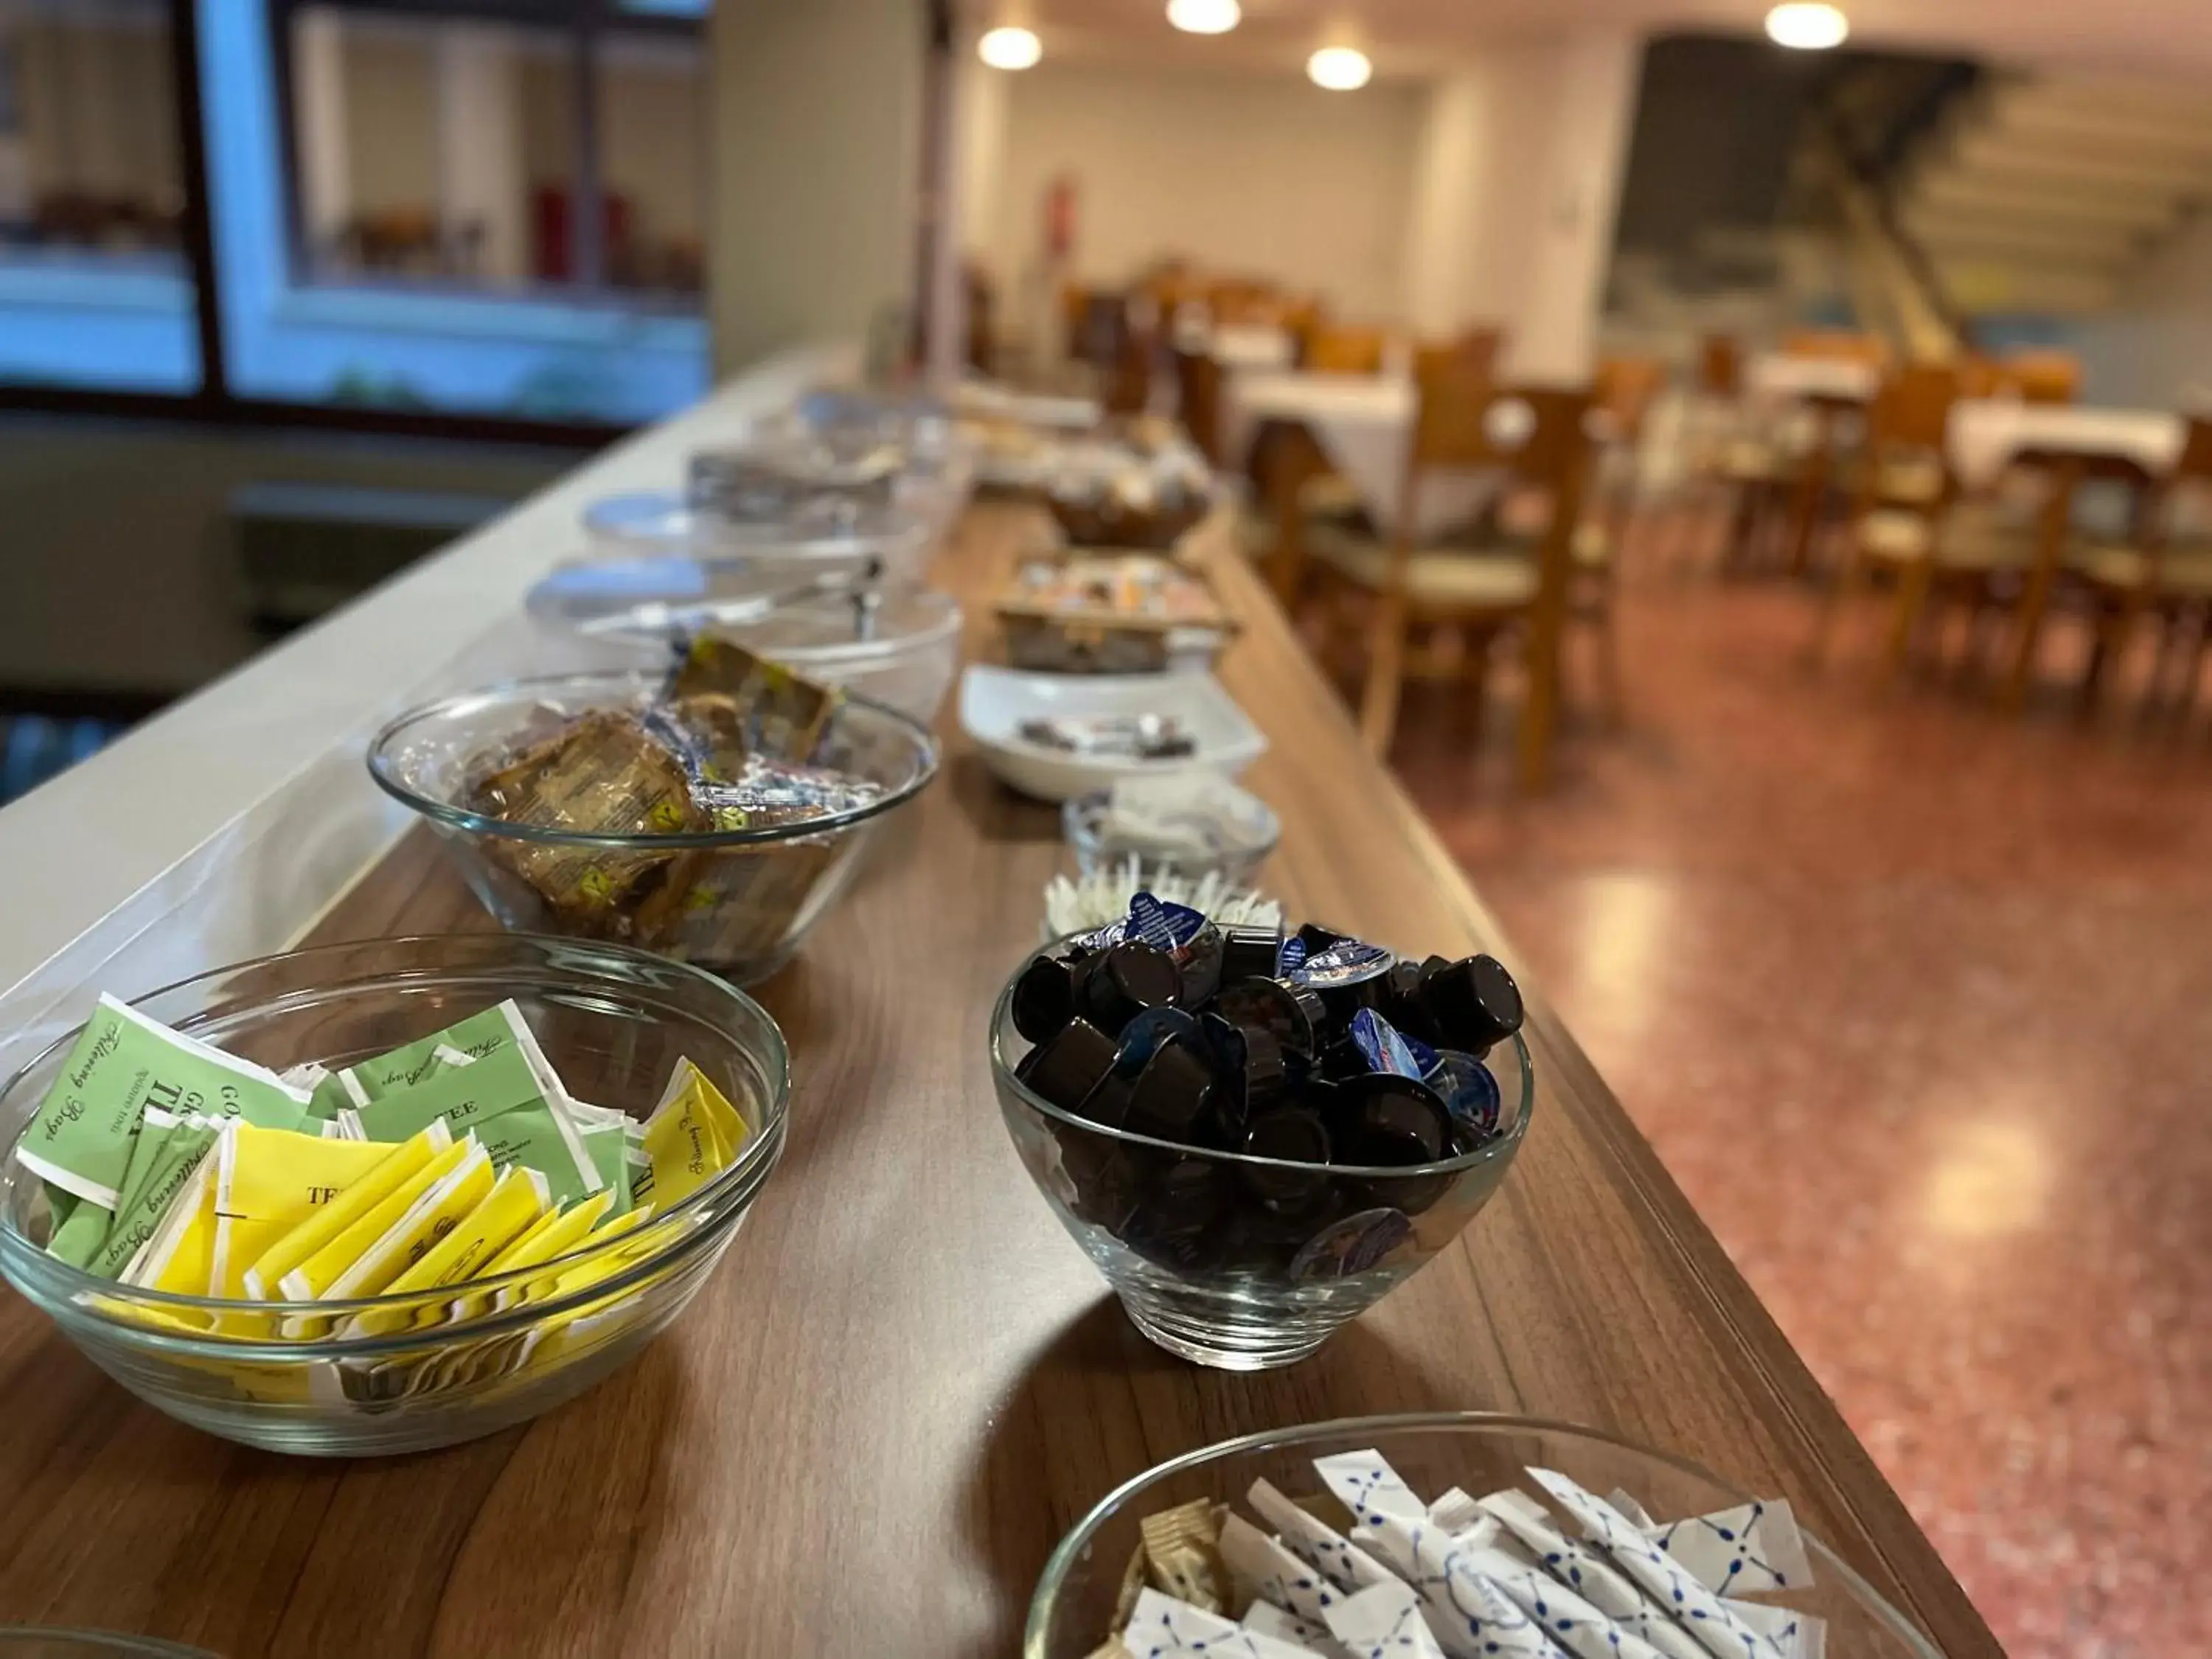 Buffet breakfast in El Greco Hotel